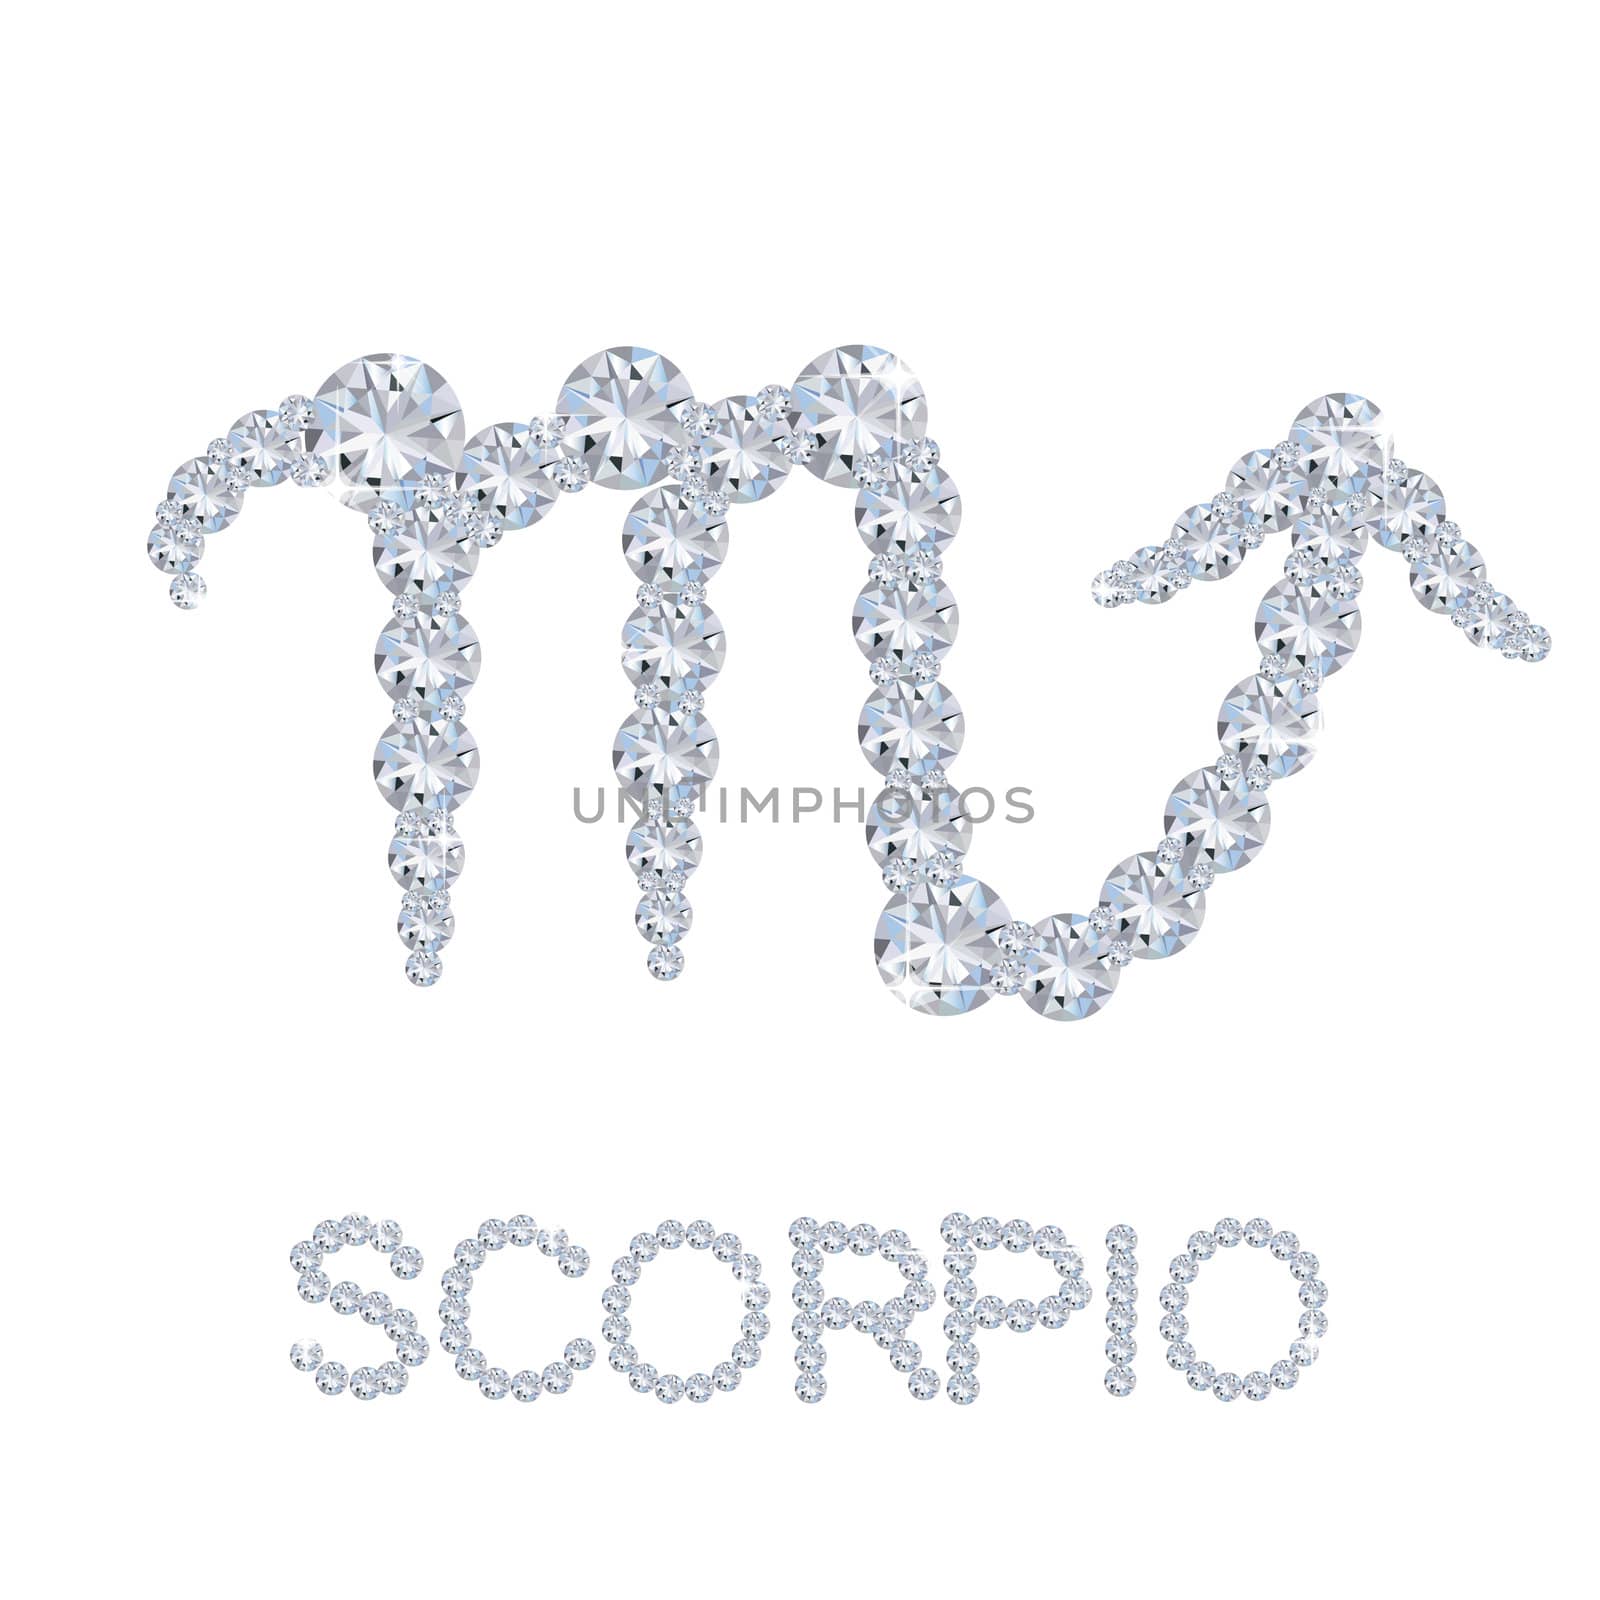 Diamond Zodiac Scorpio by peromarketing